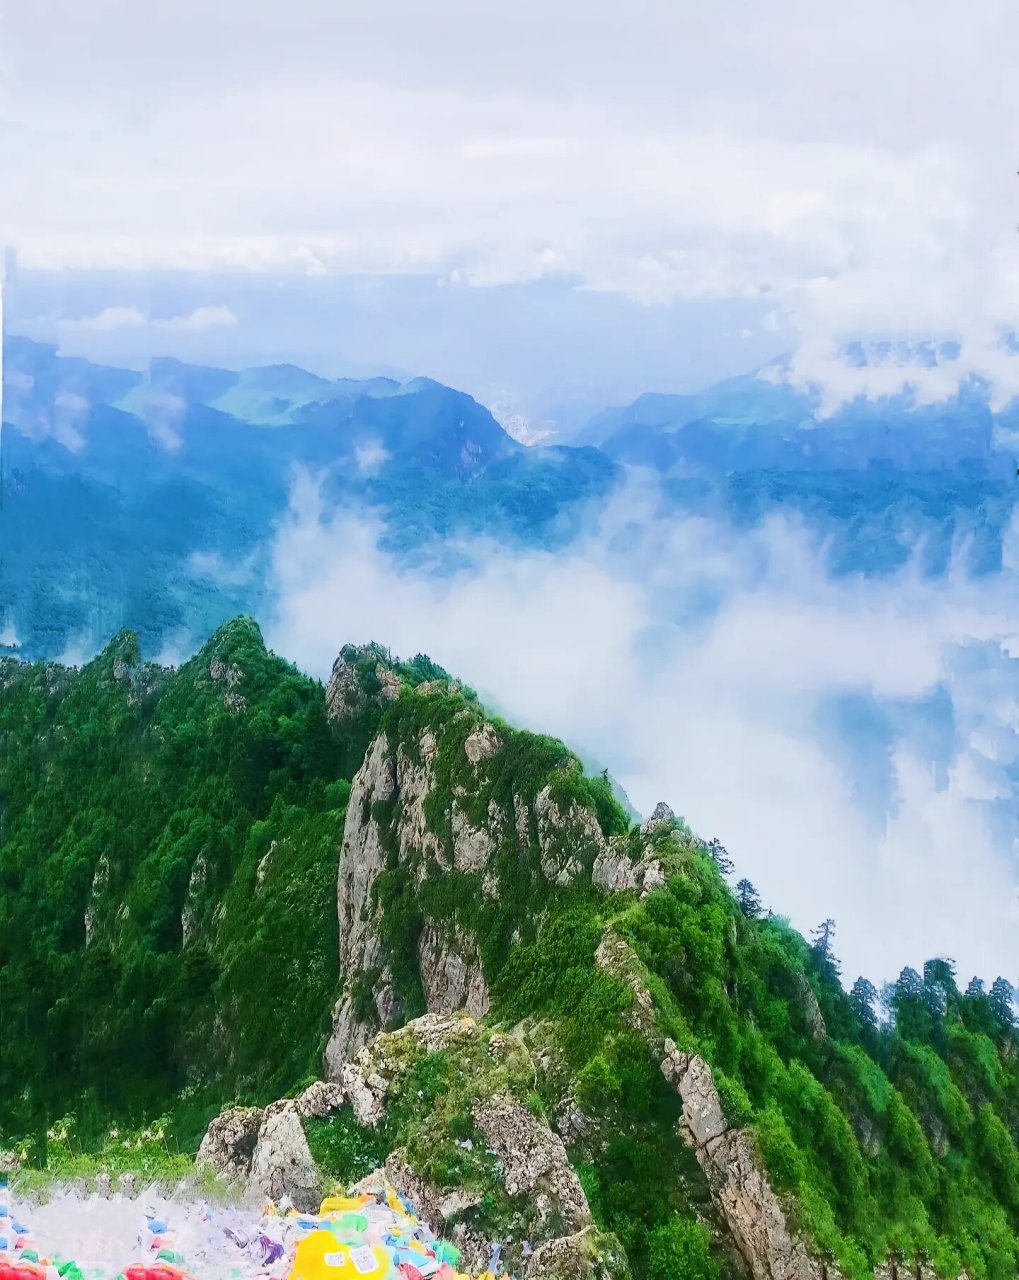 莲花山国家森林公园 莲花山国家森林公园位于甘肃南部,坐落在临潭县